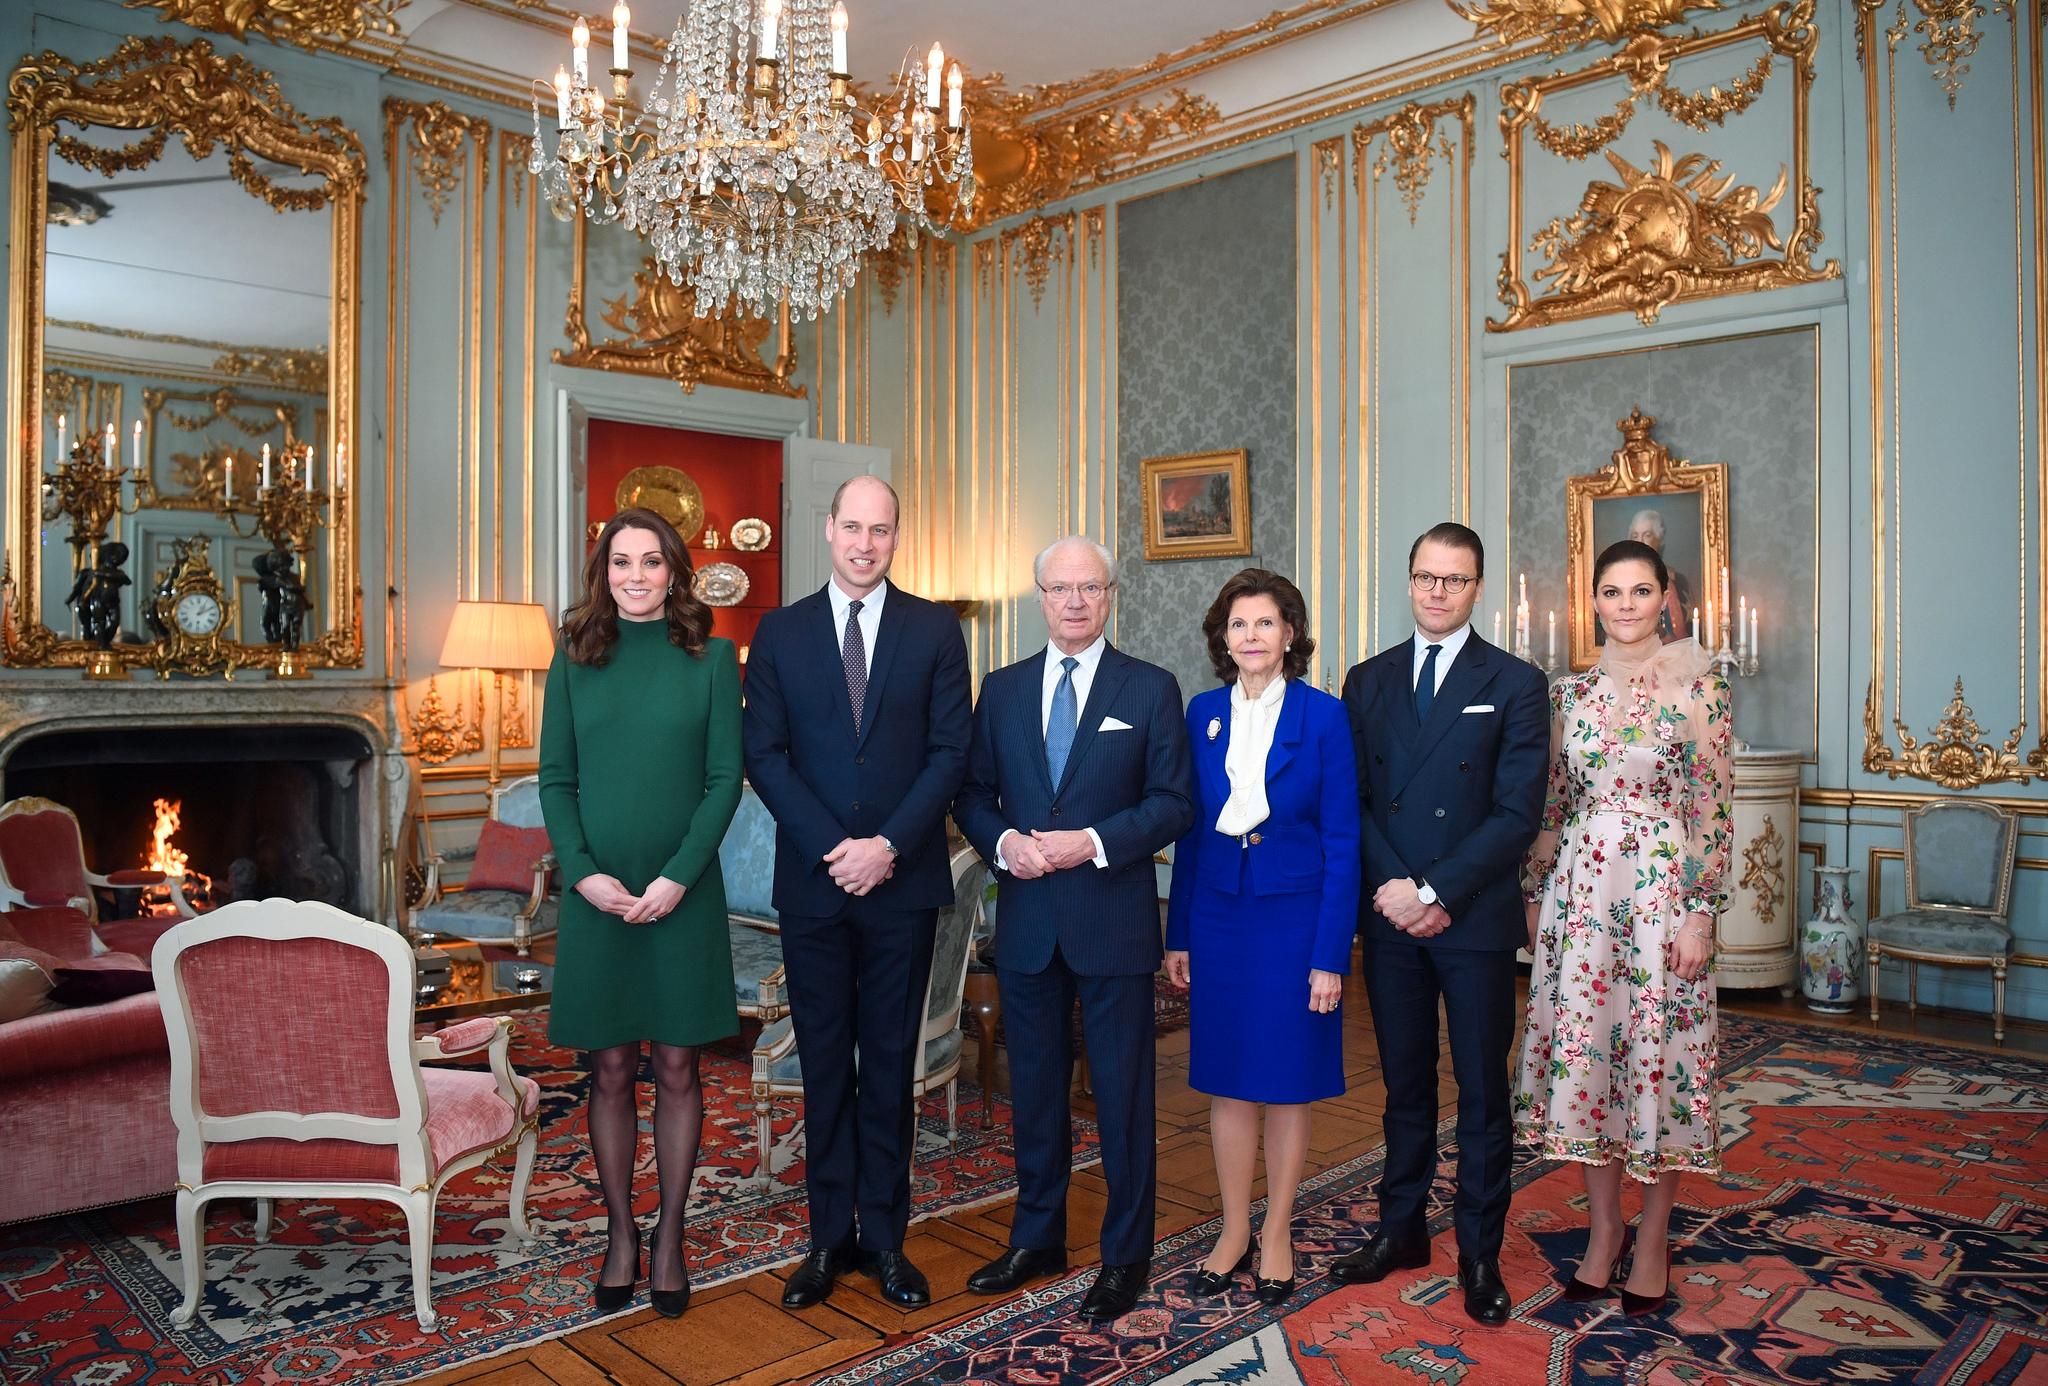  Den svenske kongefamilien inviterte prins William og hertuginne Kate til lunsj på Drottningholm slott. Her er paret fotografert sammen med kong Carl Gustav, dronning Silvia, prins Daniel og prinsesse Victoria. 